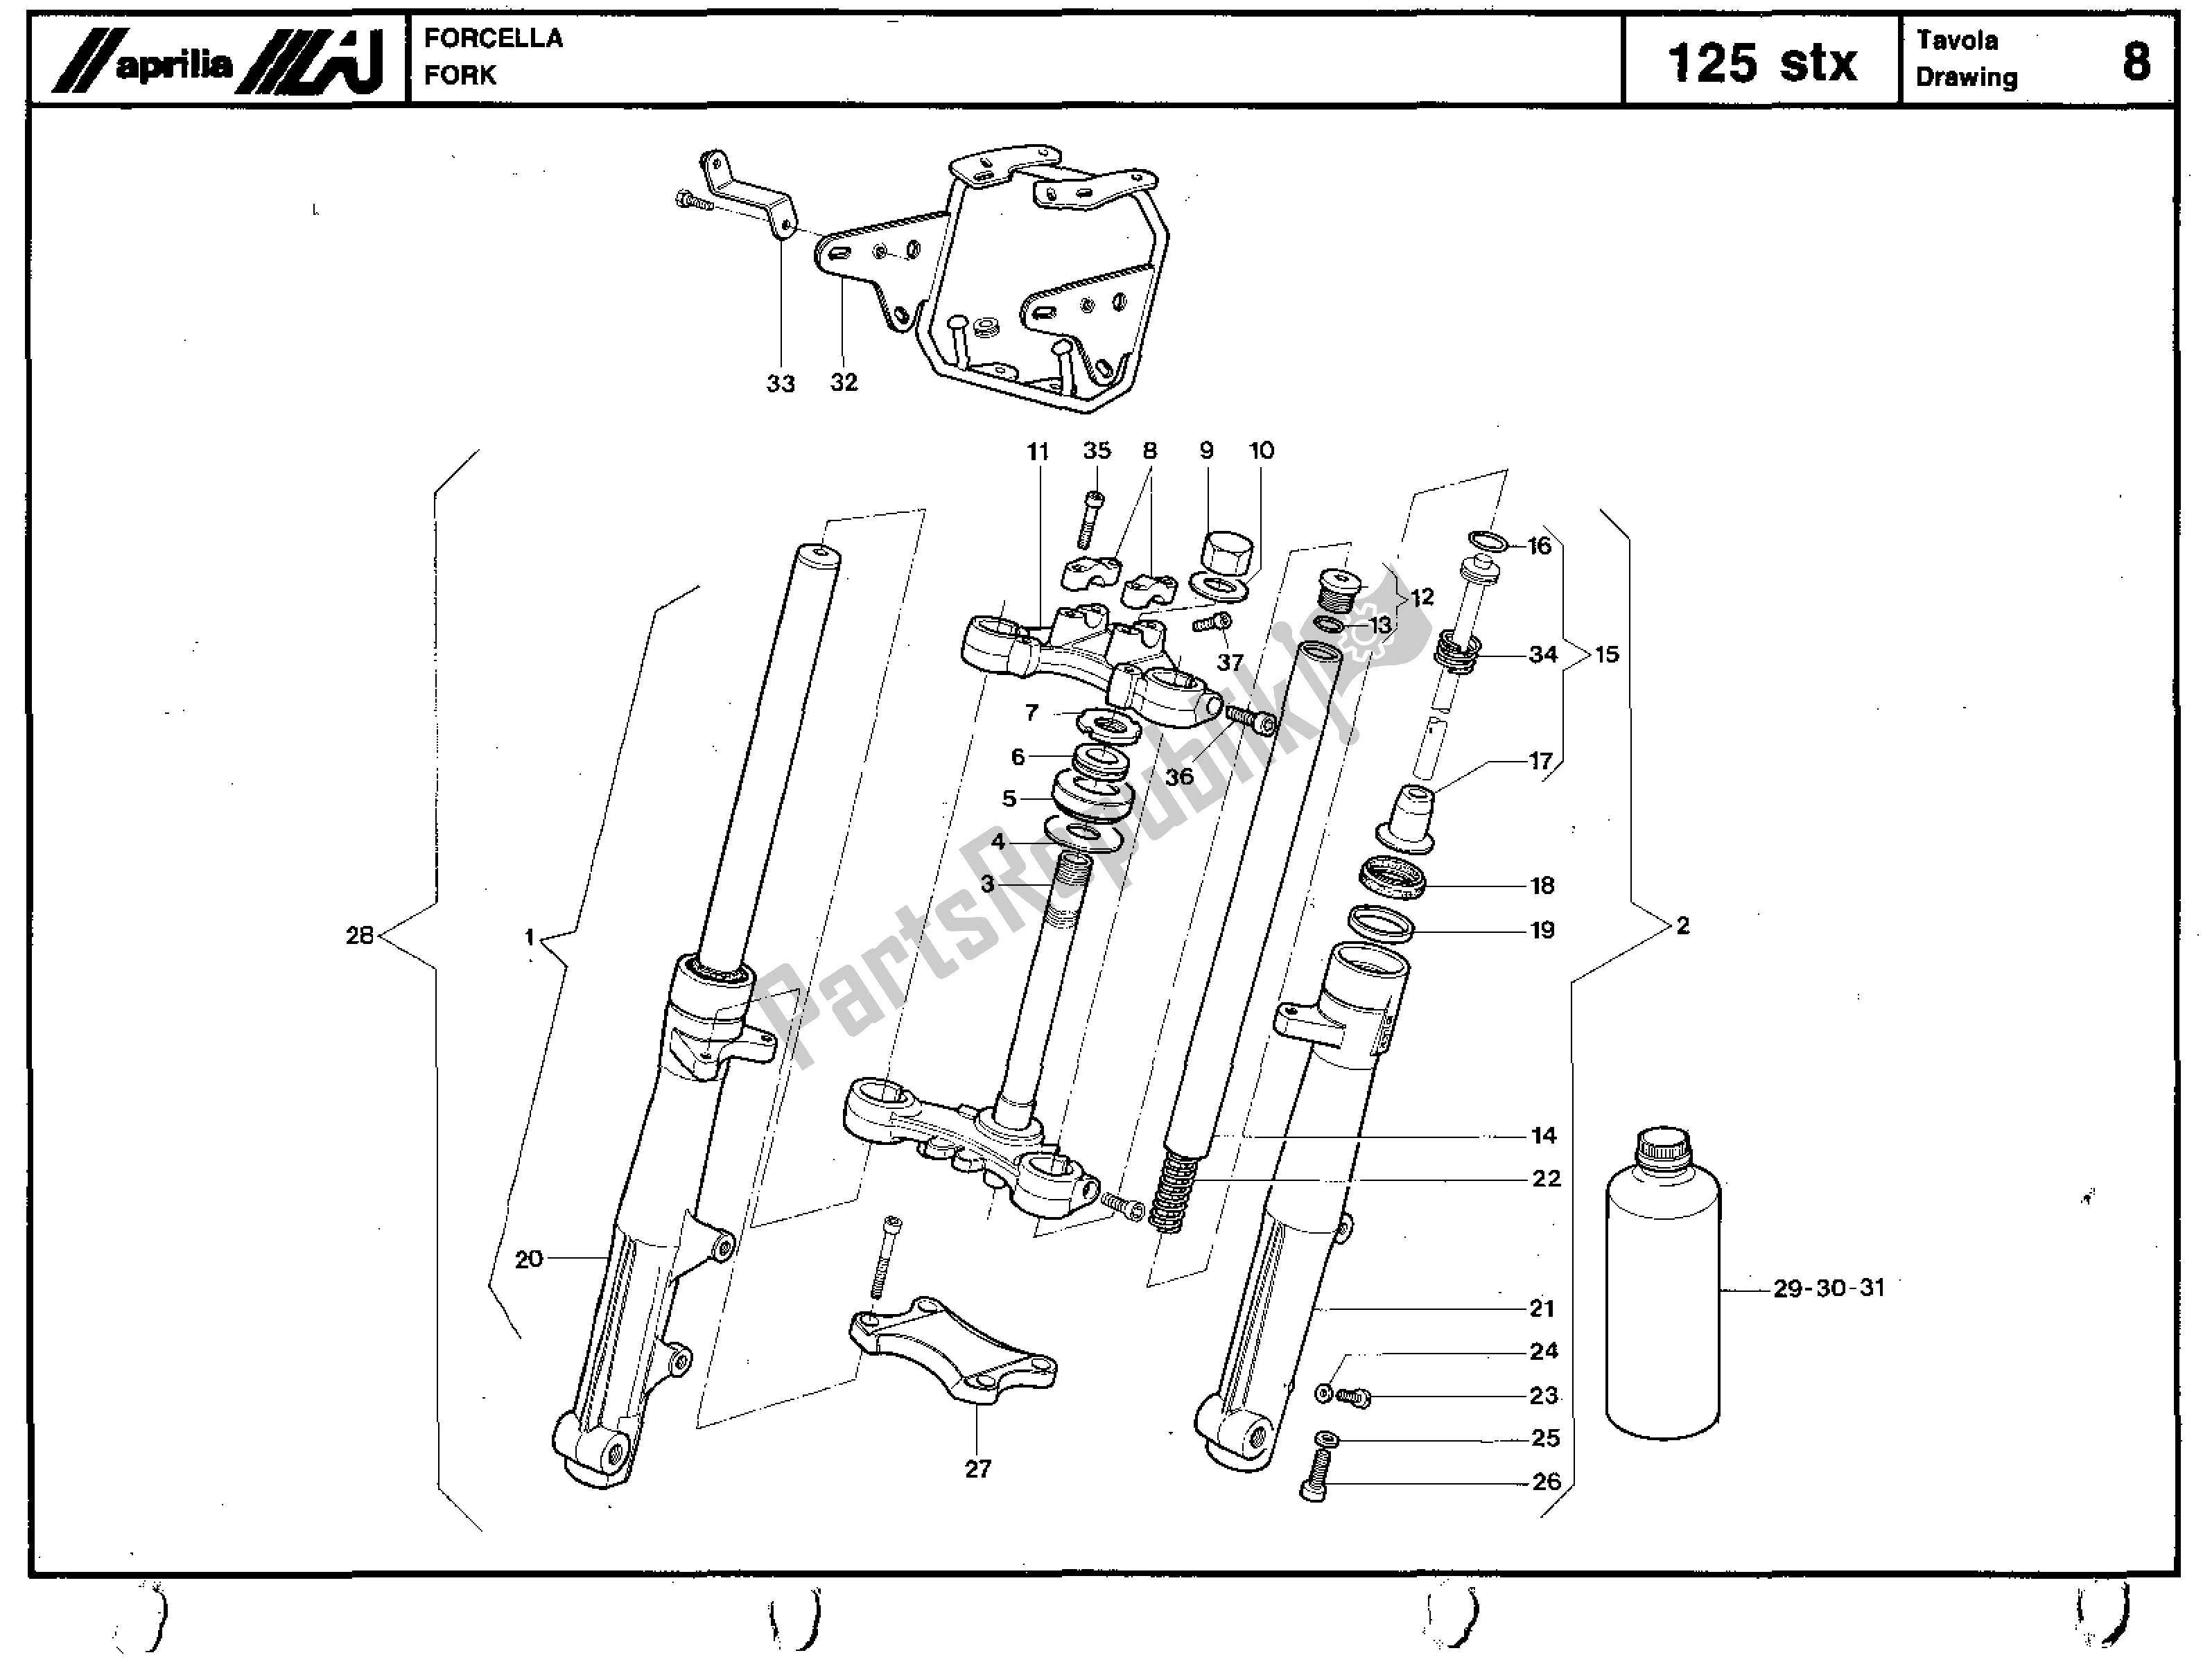 Toutes les pièces pour le Fork du Aprilia STX 125 1984 - 1986